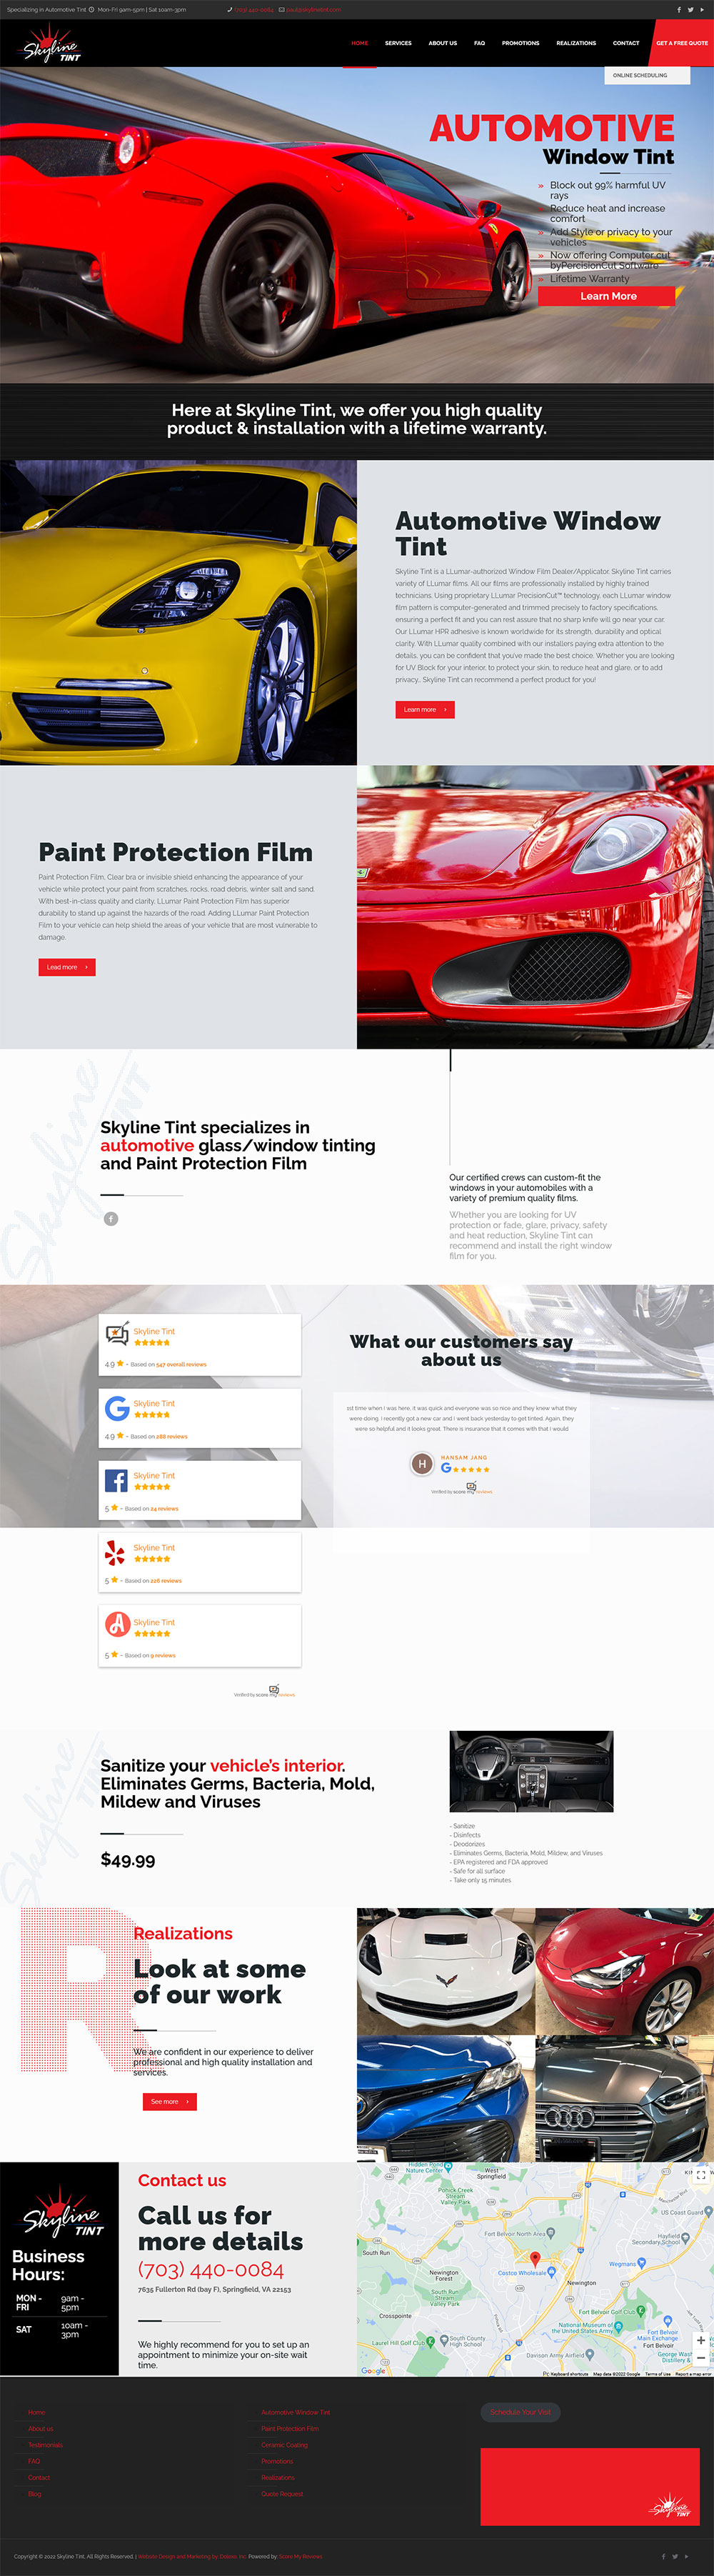 Auto Tint Web Design Services